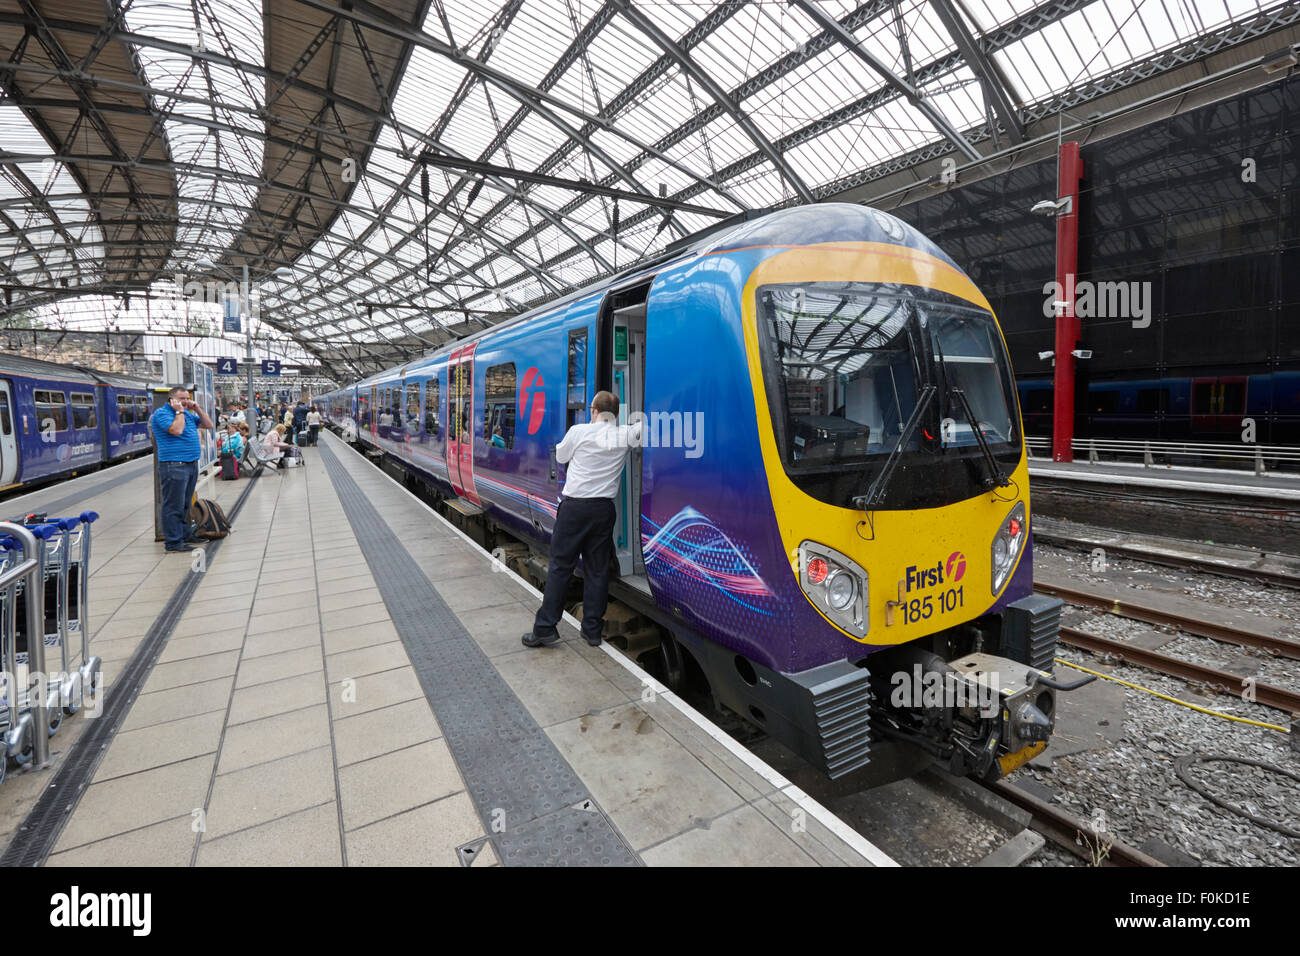 Conducteur de train avec premier train sur la plate-forme à la gare de Liverpool Lime Street England UK Banque D'Images